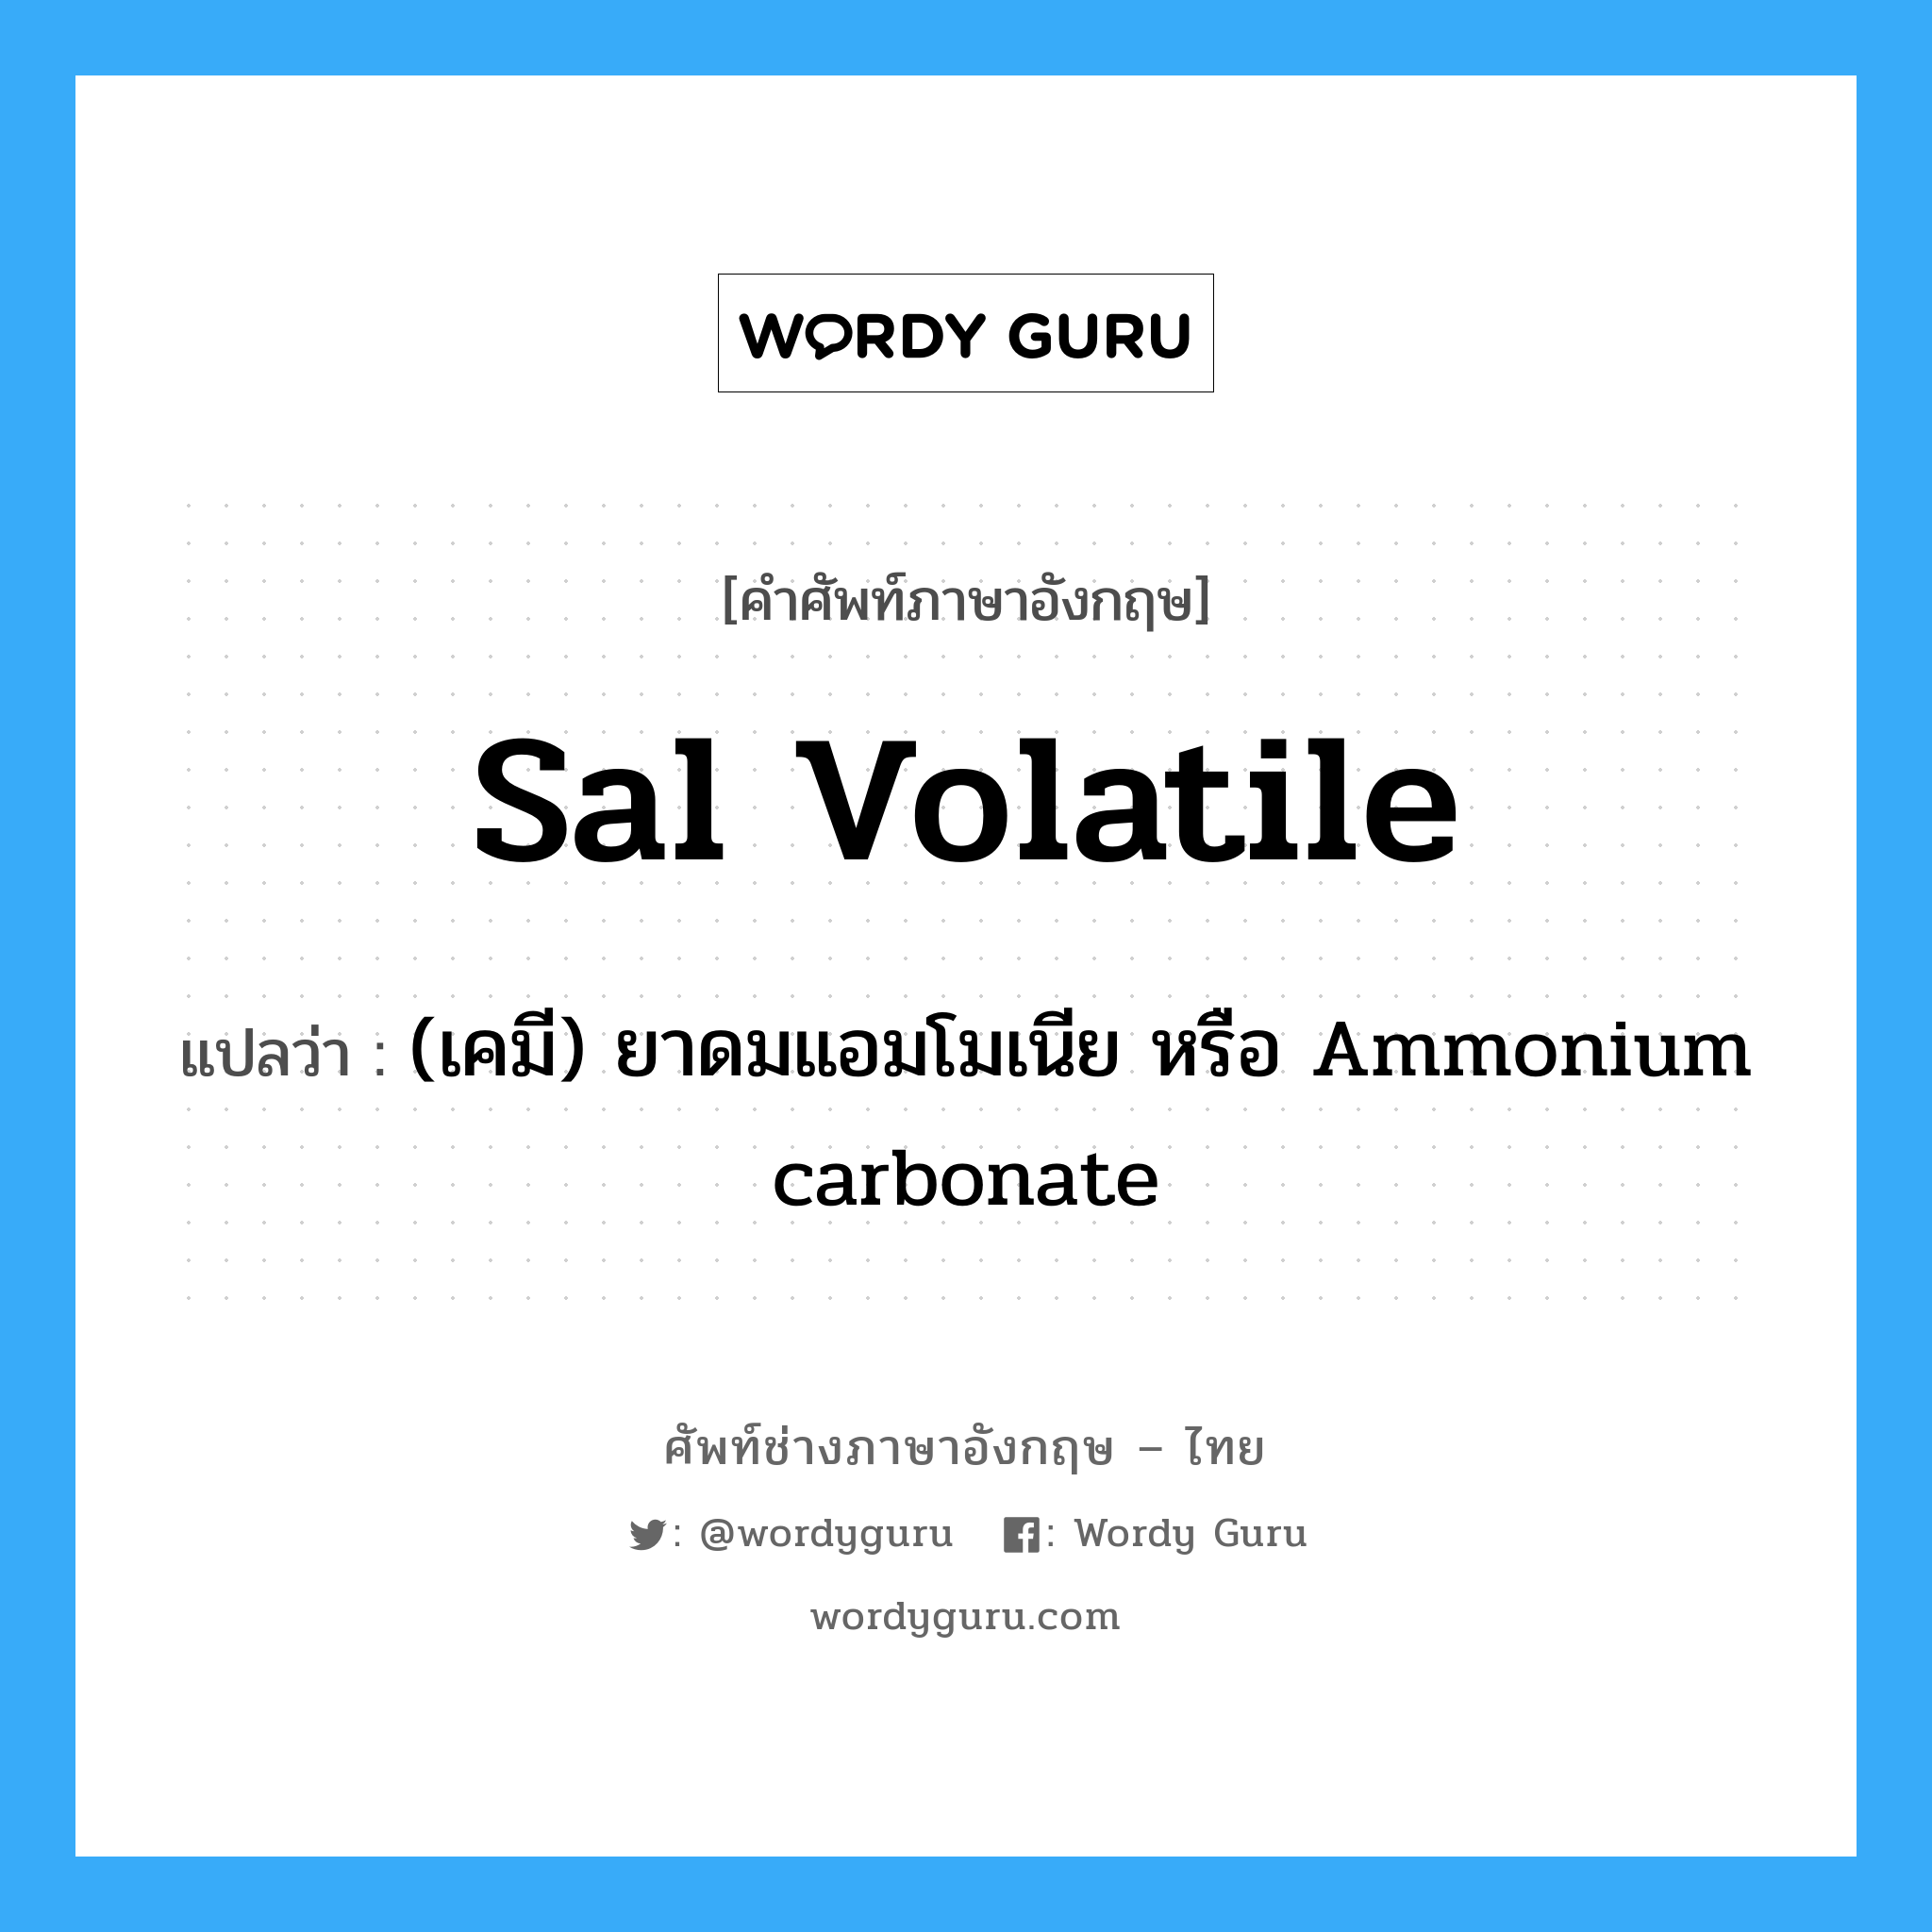 (เคมี) ยาดมแอมโมเนีย หรือ Ammonium carbonate ภาษาอังกฤษ?, คำศัพท์ช่างภาษาอังกฤษ - ไทย (เคมี) ยาดมแอมโมเนีย หรือ Ammonium carbonate คำศัพท์ภาษาอังกฤษ (เคมี) ยาดมแอมโมเนีย หรือ Ammonium carbonate แปลว่า sal volatile